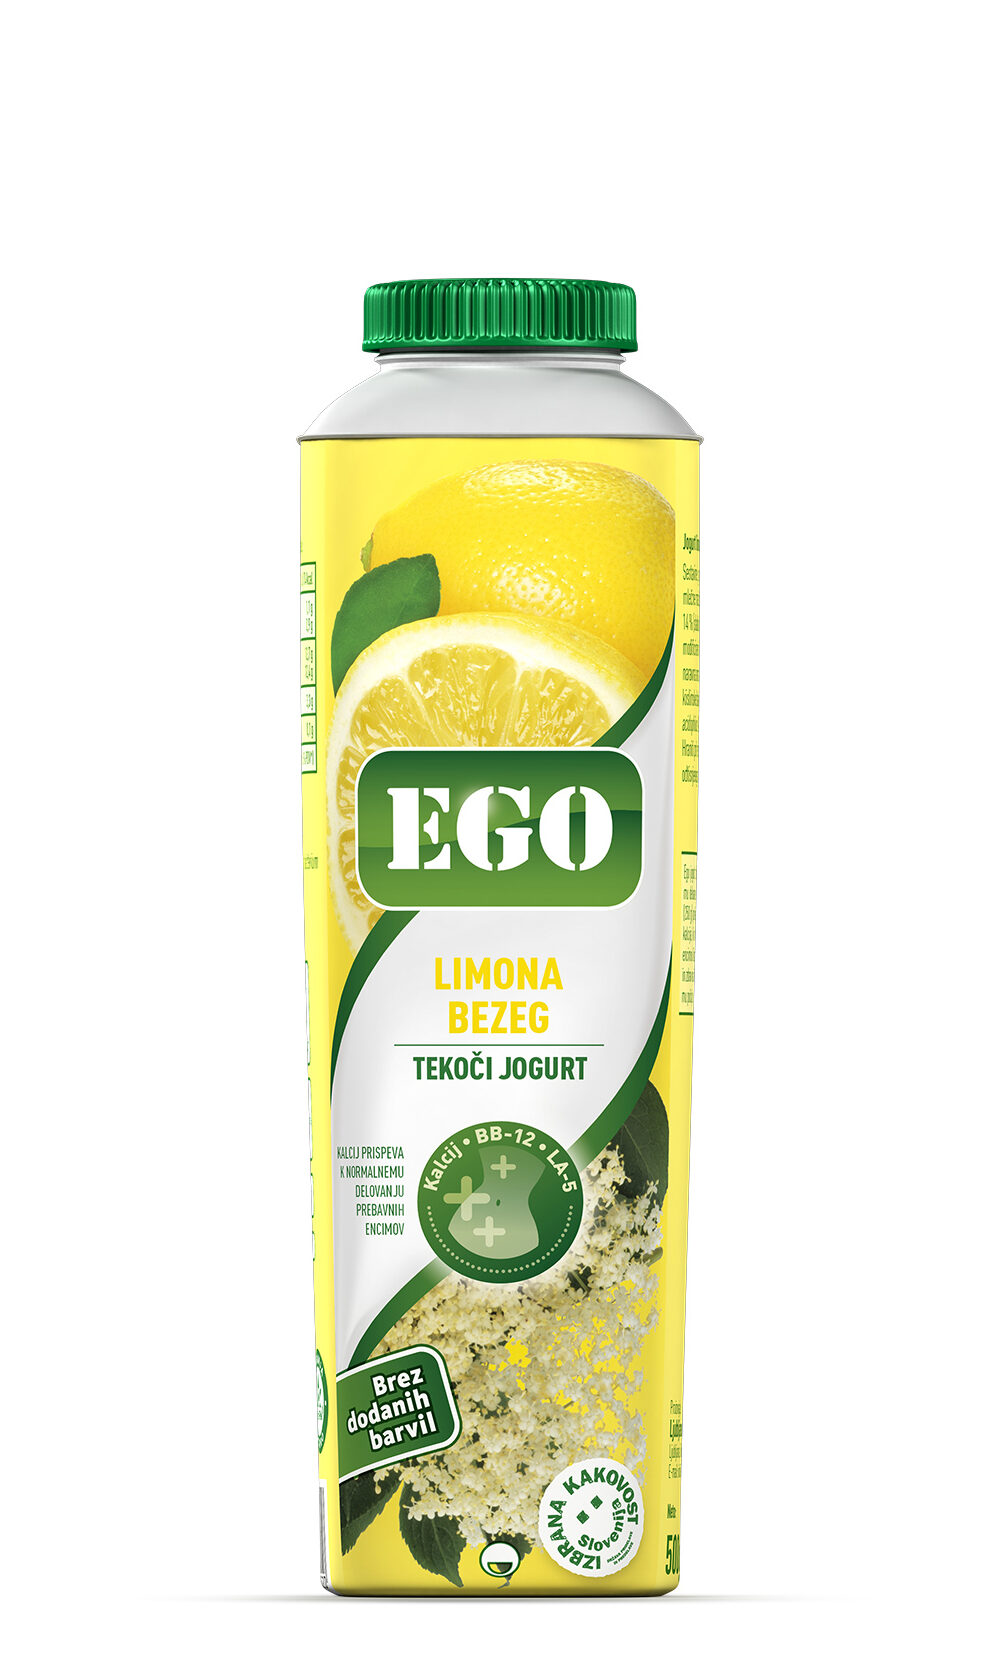 Ego, limona, bezeg